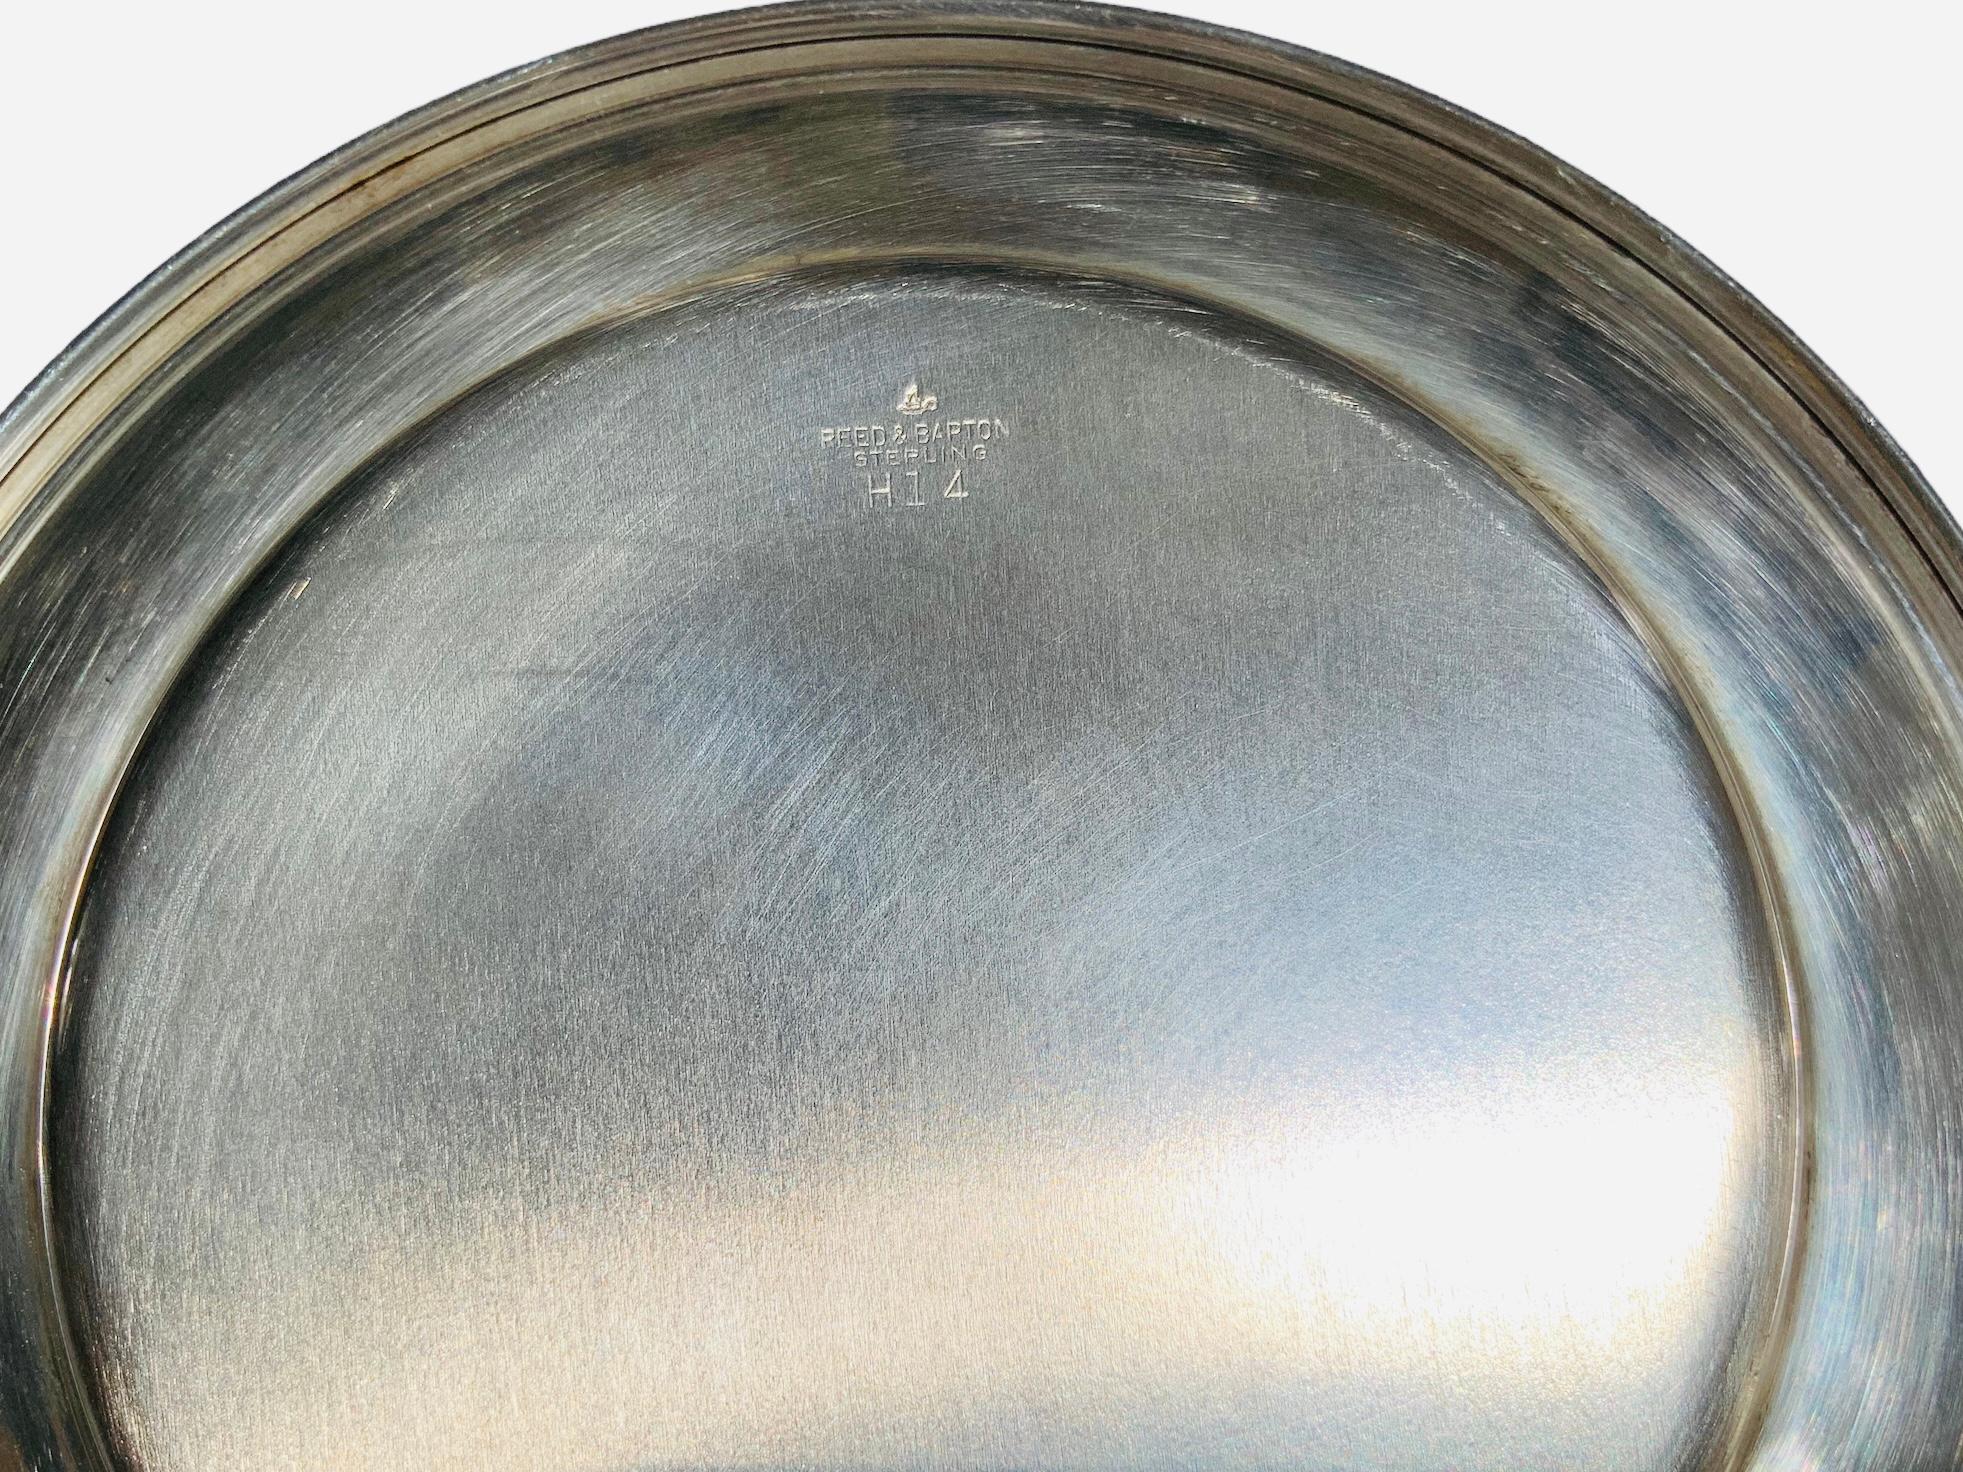 Dies ist ein Reed and Barton Sterling Silber Runde Platte. Dieser kleine Teller kann für Vorspeisen oder Brot verwendet werden. Sie ist auf der Rückseite des Tellers mit Reed & Barton Sterling H 14 gestempelt.